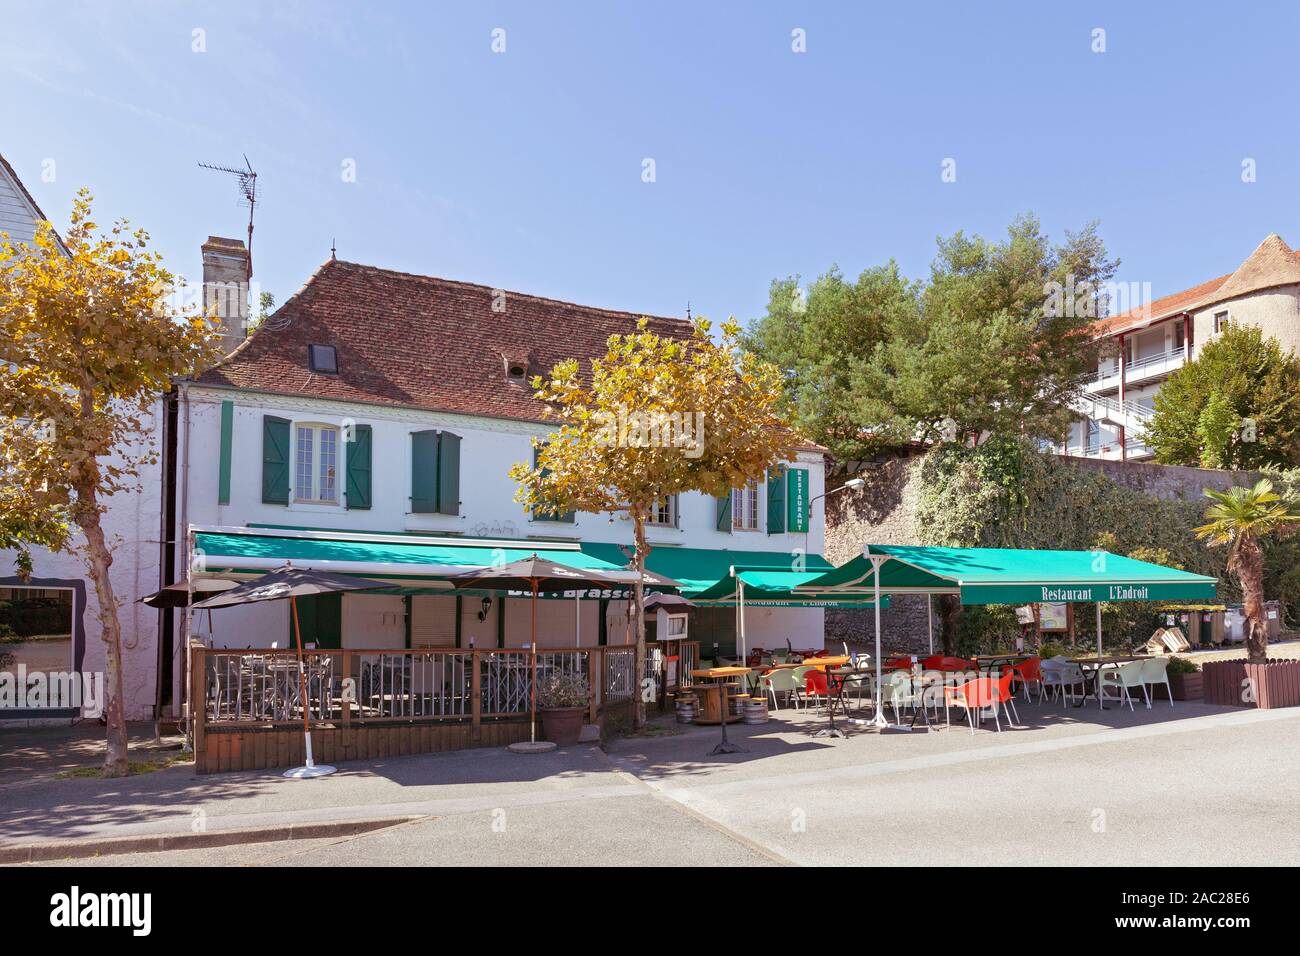 Europe, France, Nouvelle-Aquitaine, Orthez, Restaurant l'Endroit on Place du Foirail Stock Photo